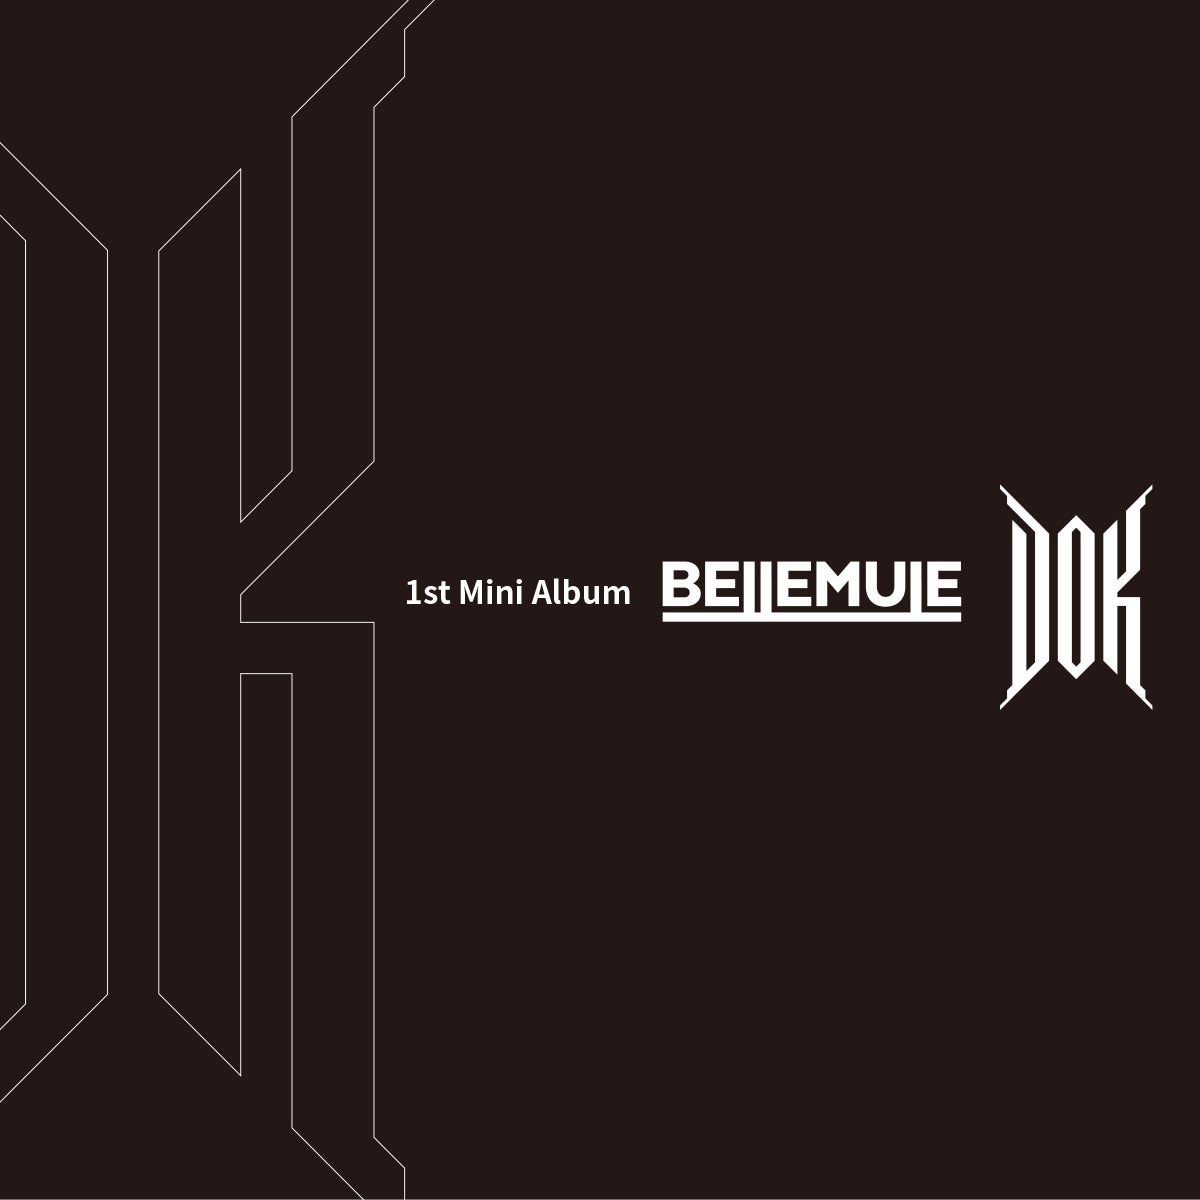 電音部シンオオクボエリア「Bellemule」が1stミニアルバム『DOK』を12月20日に発売決定！デビュー曲『NDA』から最新シングル『Mirror Mirror』など全6曲を収録